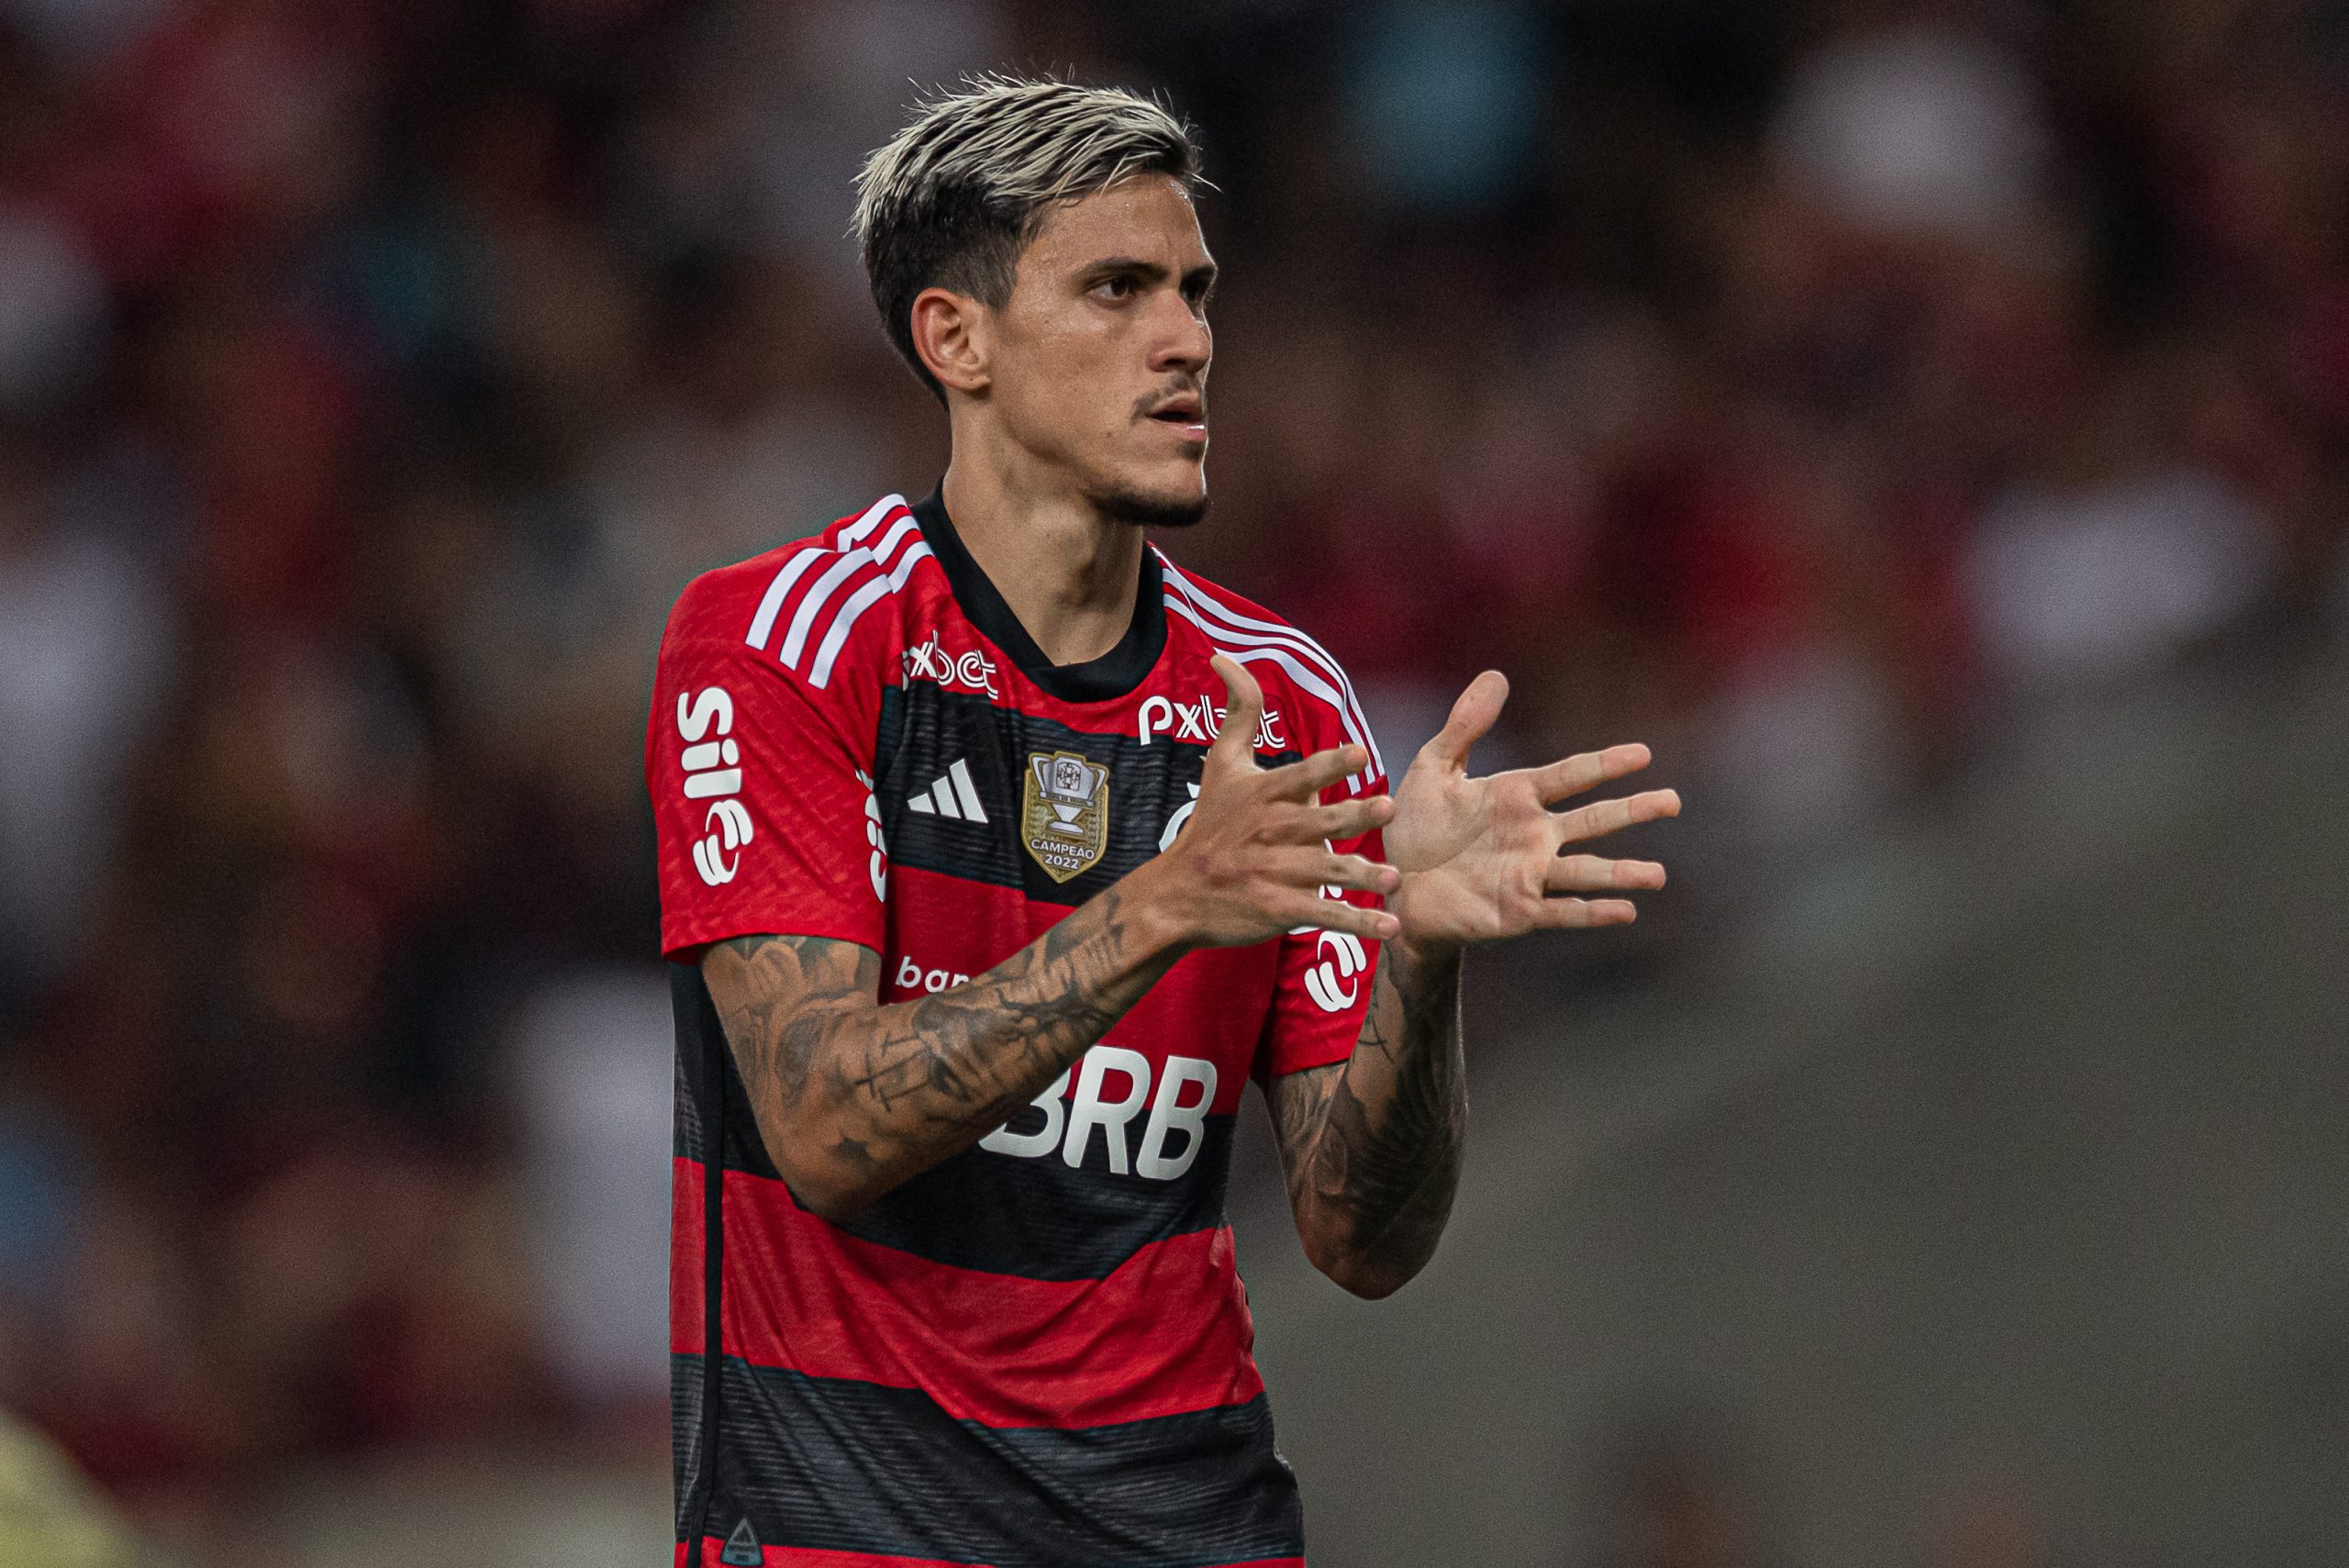 Escalação do Flamengo: Pedro sofre entorse e não enfrenta o Athletico; David Luiz também está fora